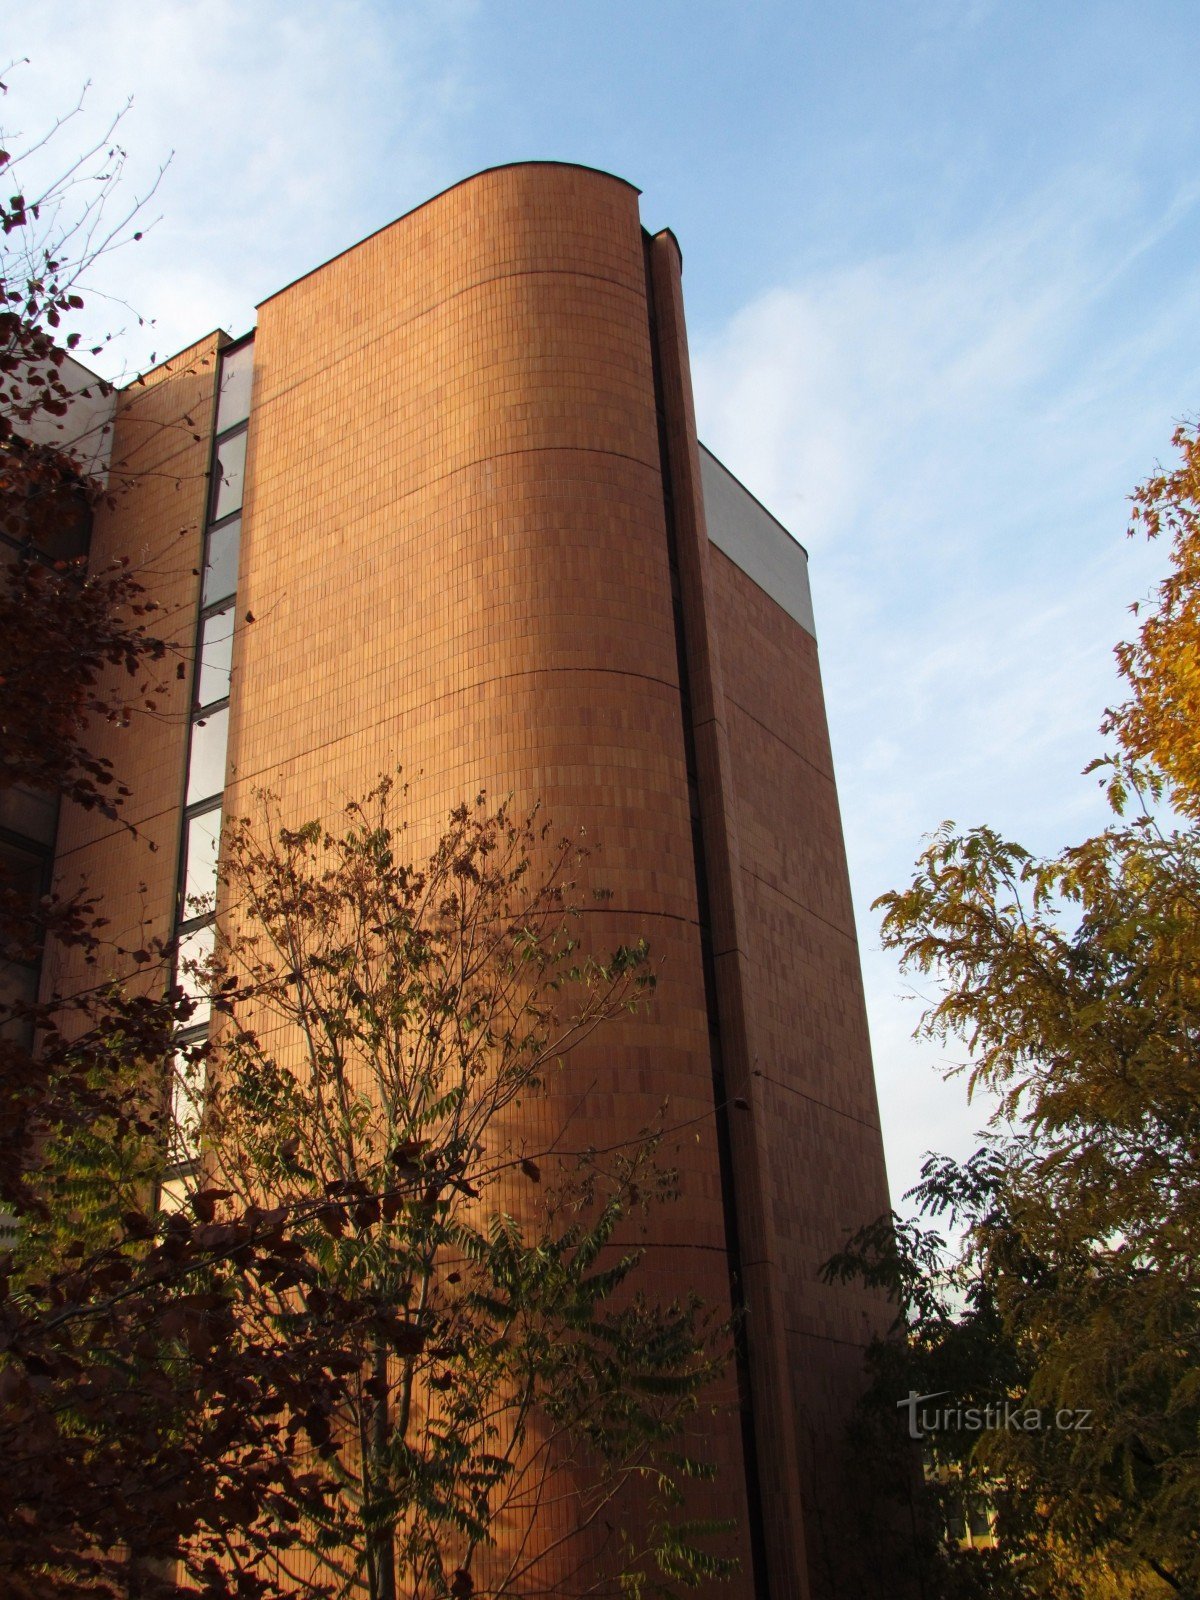 Zlín - bygning af Fakultetet for Ledelse og Økonomi